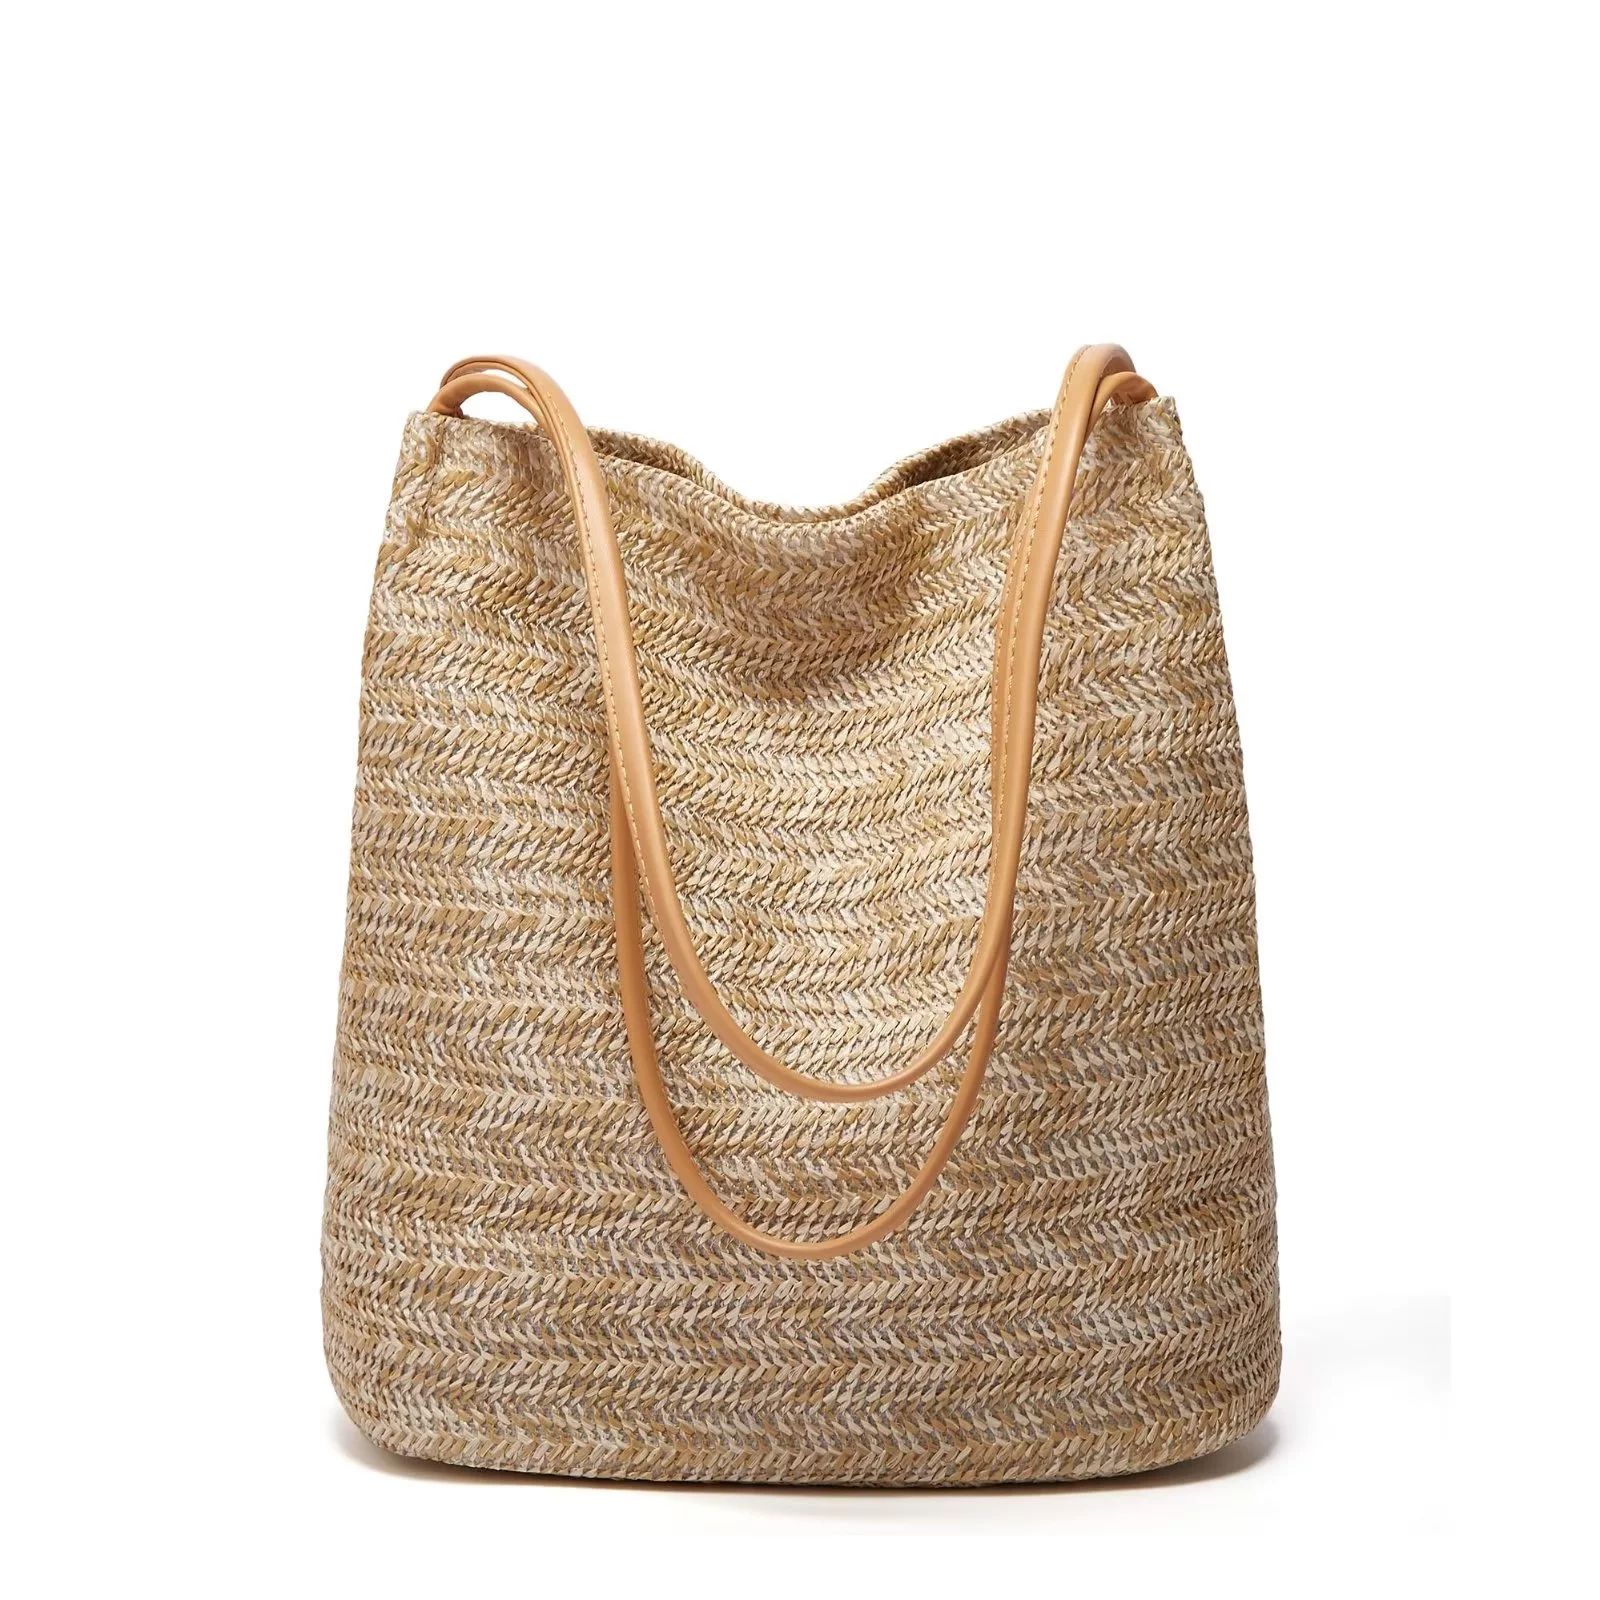 Tote Bag for Women Small Satchel Bag Straw Beach Bag Cute Hobo Bag Fashion Tote Handbag Fashion C... | Walmart (US)